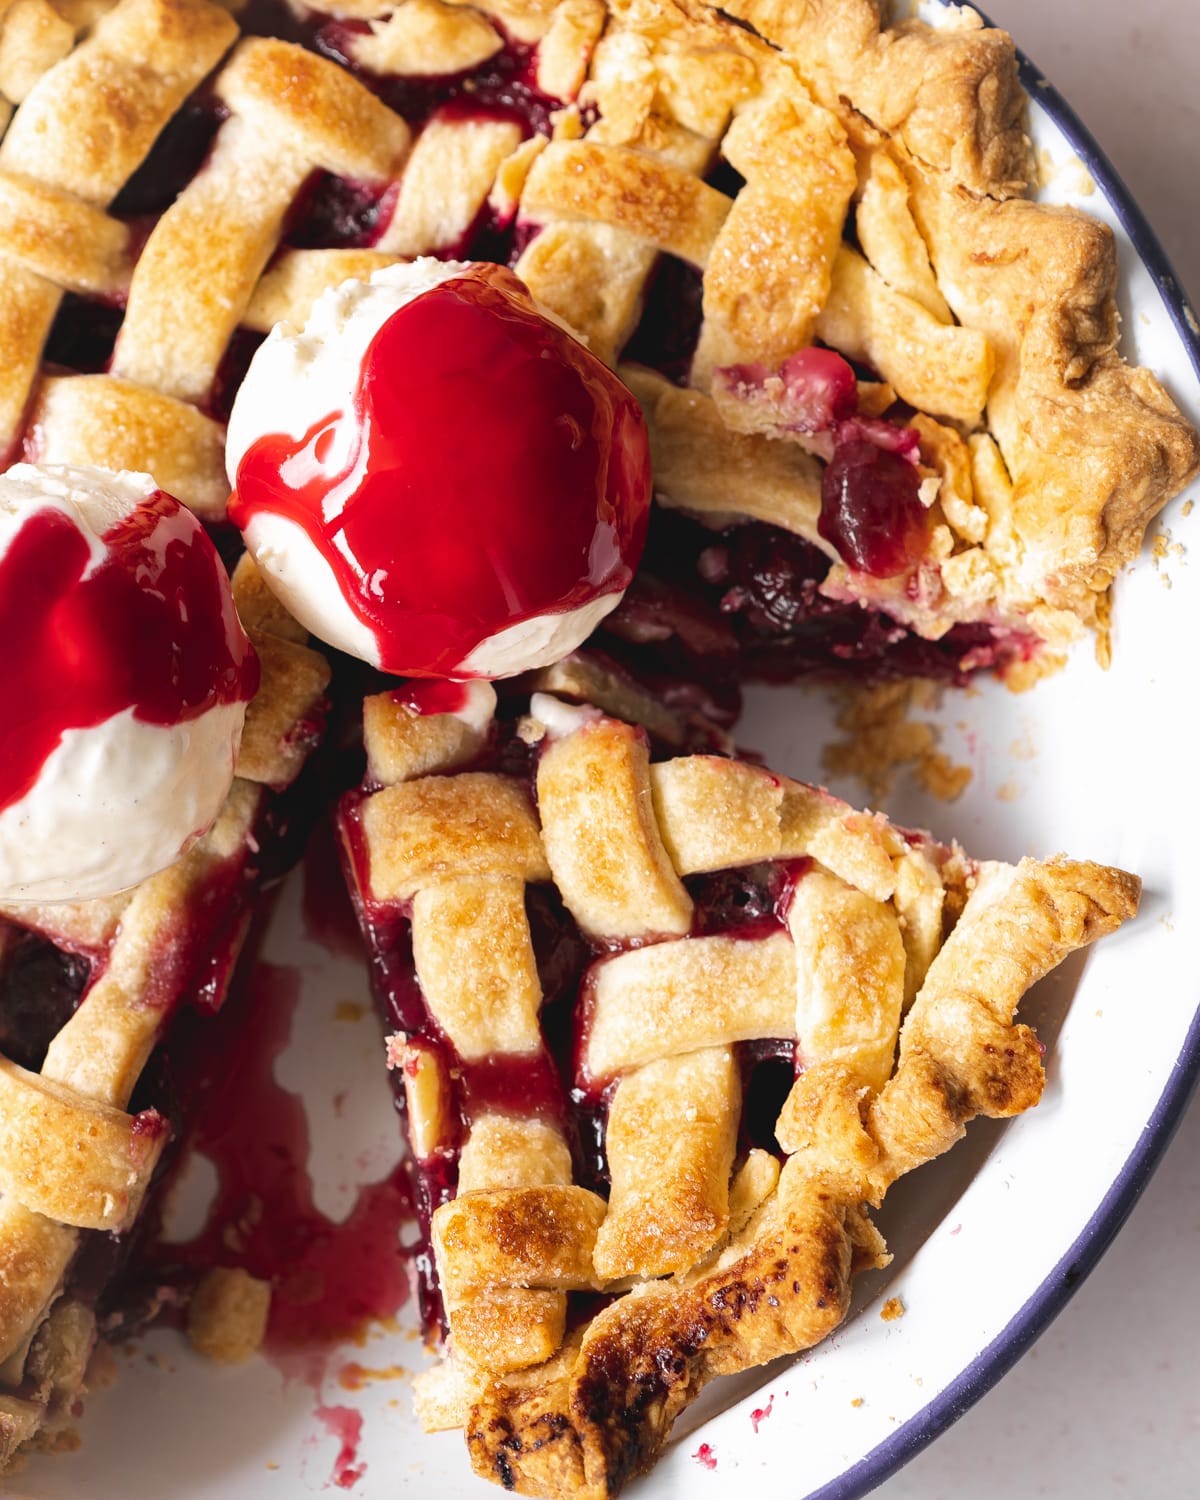 vegan cherry pie with lattice top and ice cream scoops on top.